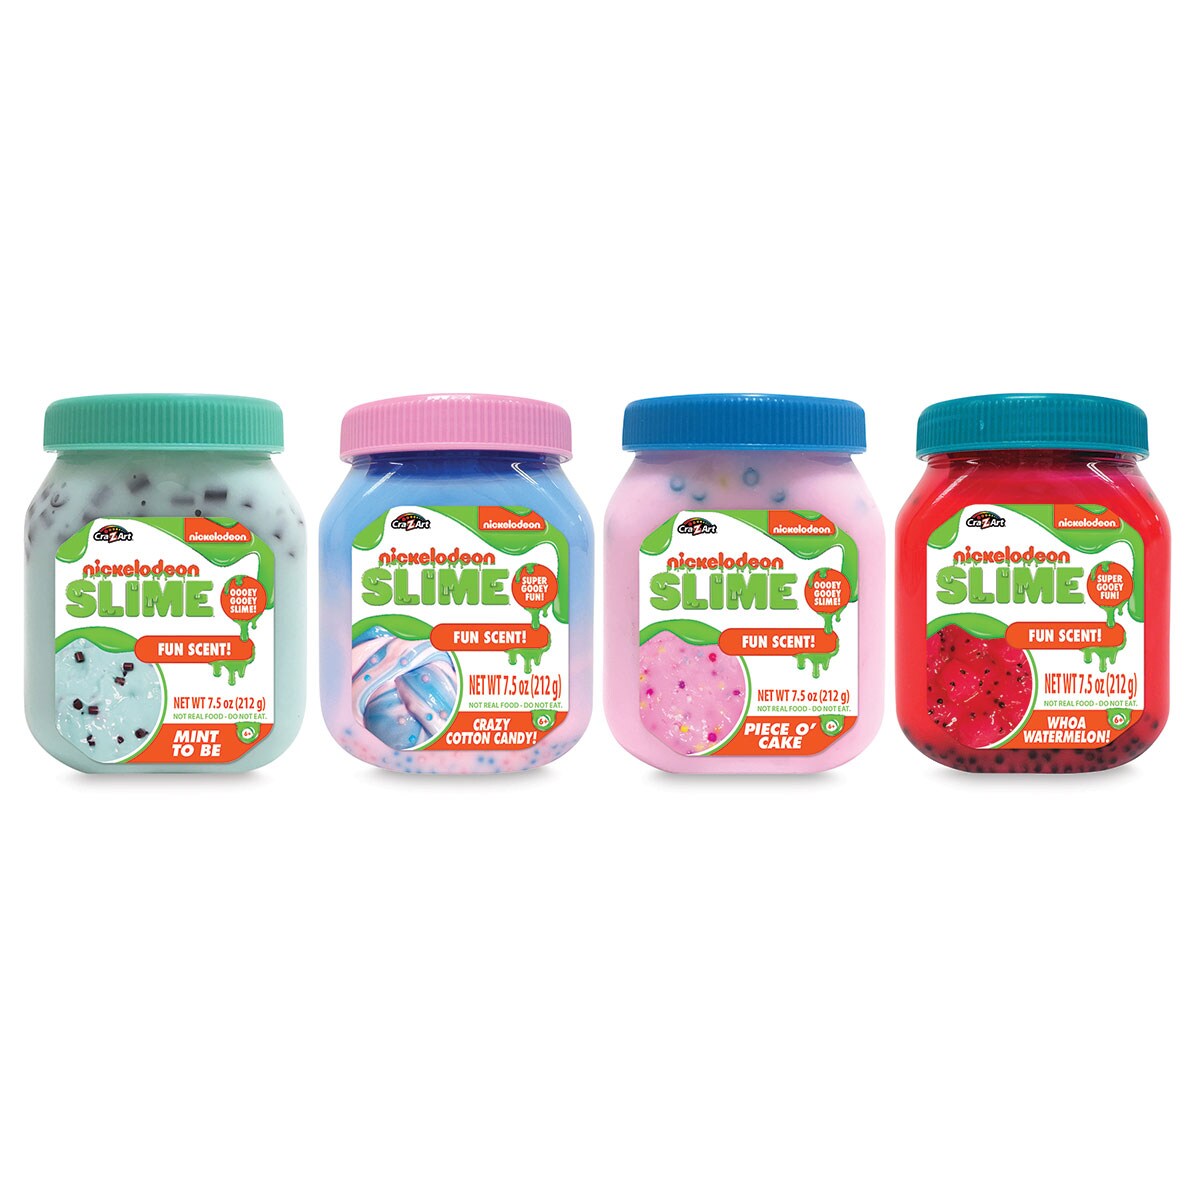 Nickelodeon Fun Foods Slime